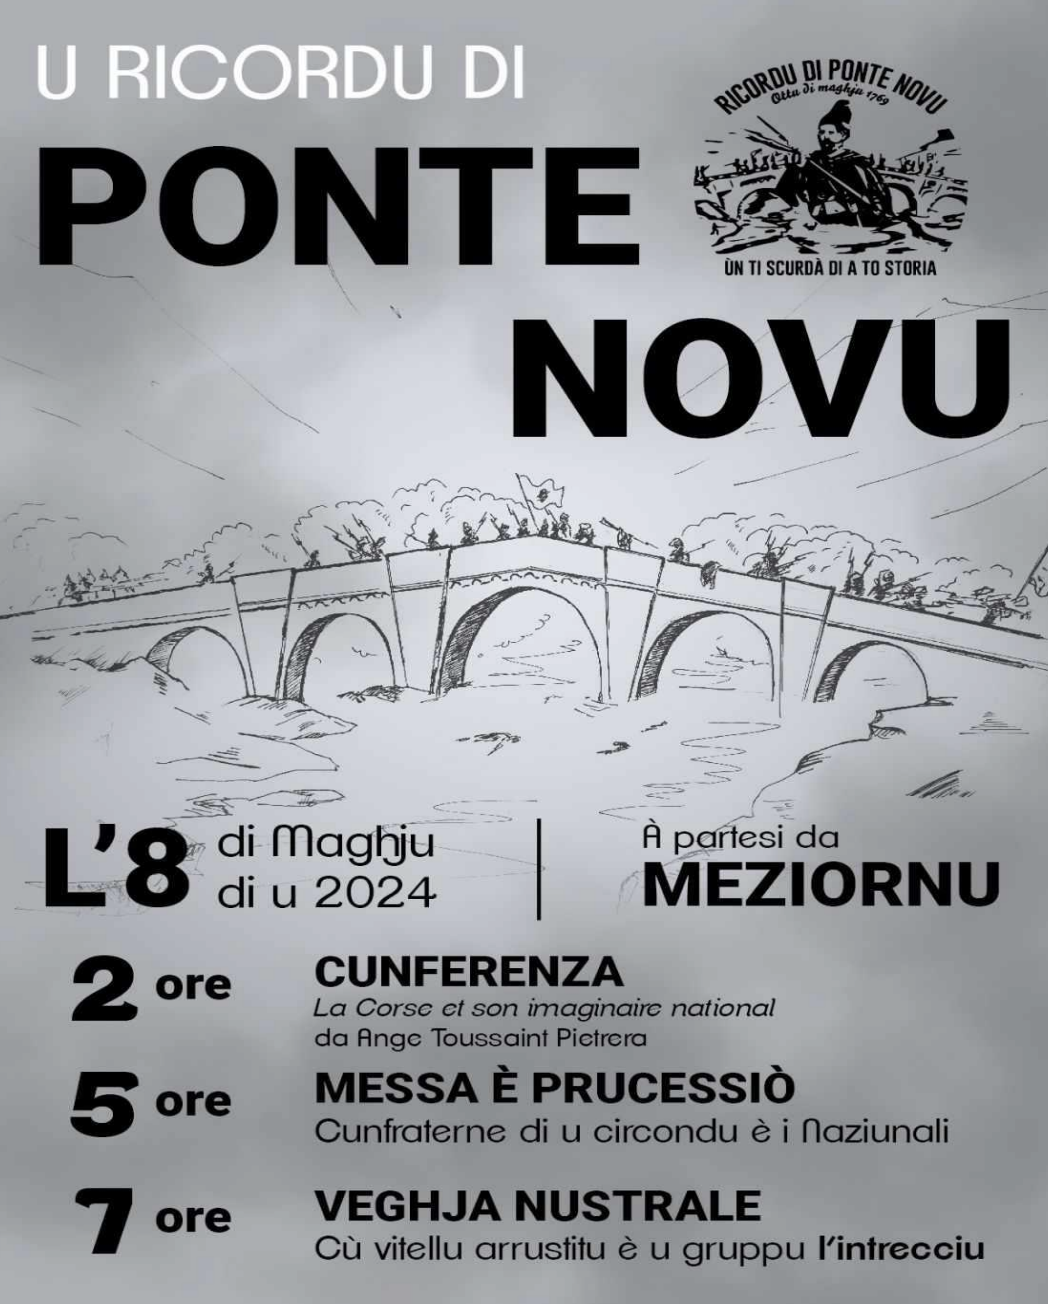 U programma di a cummemurazione di a battaglia di Ponte – Novu